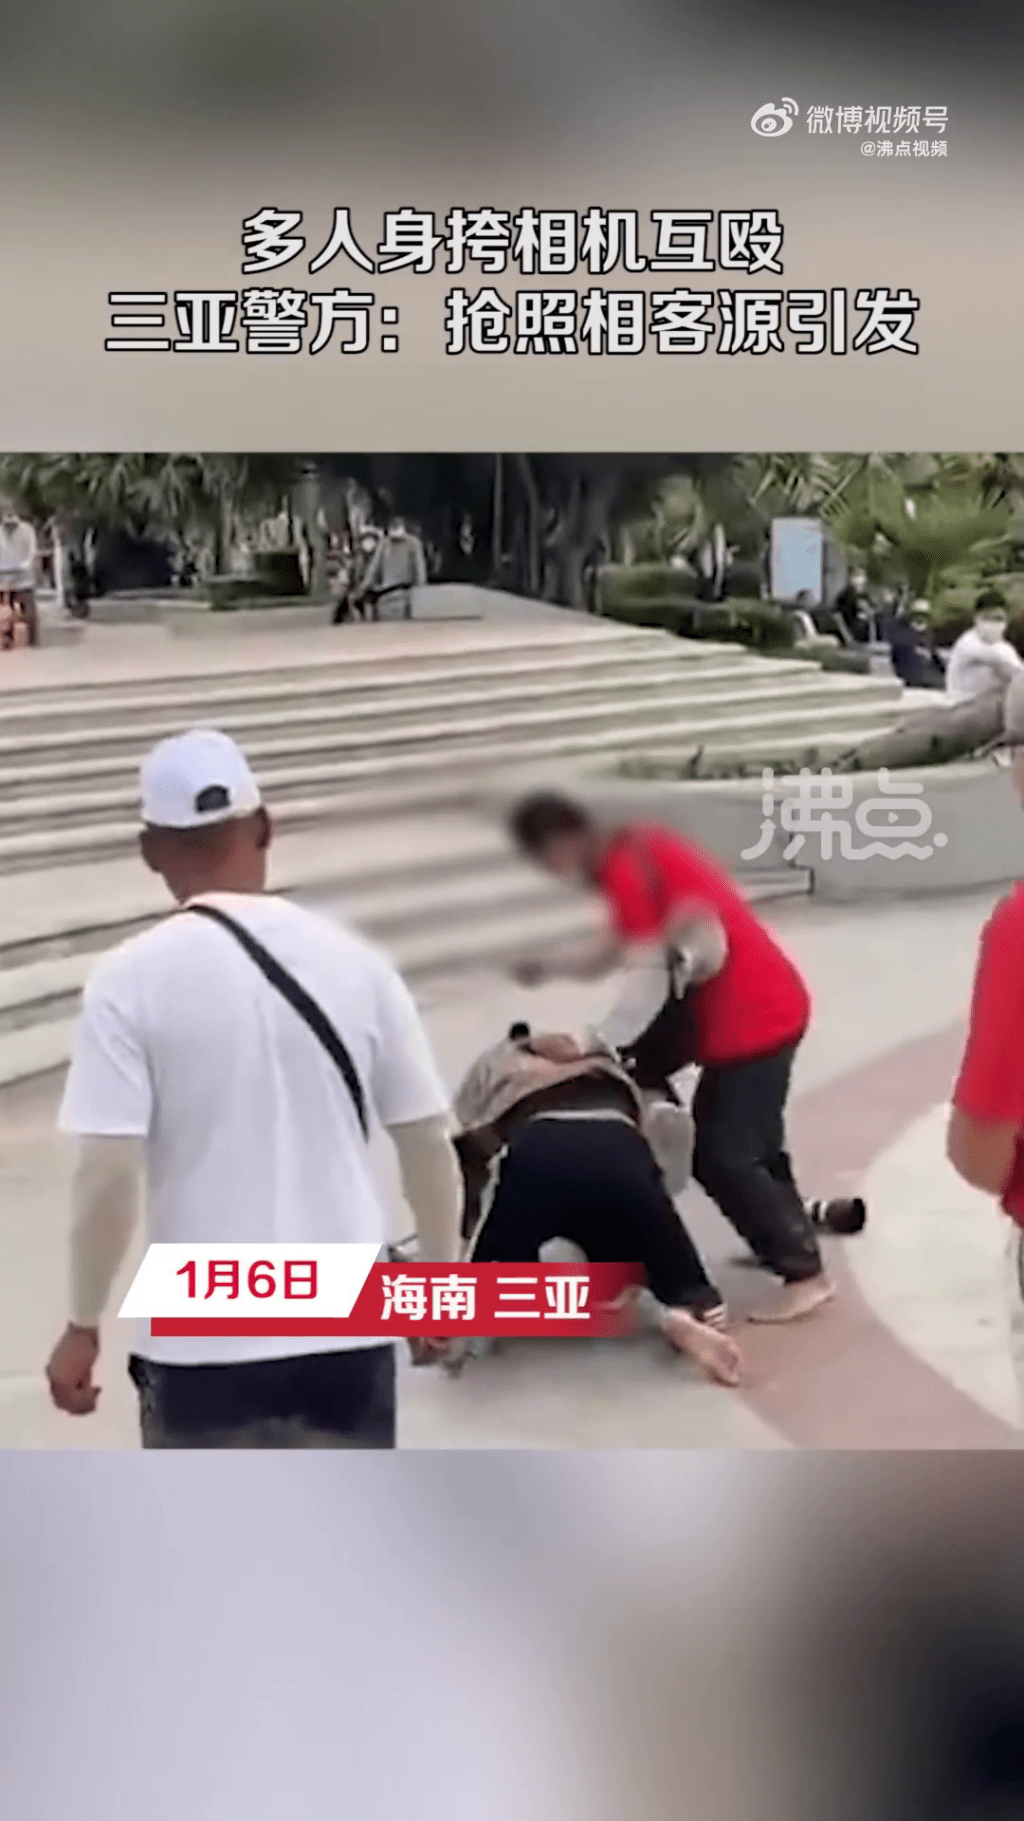 一名穿红衫的男子将另一名男子按在地上施打。